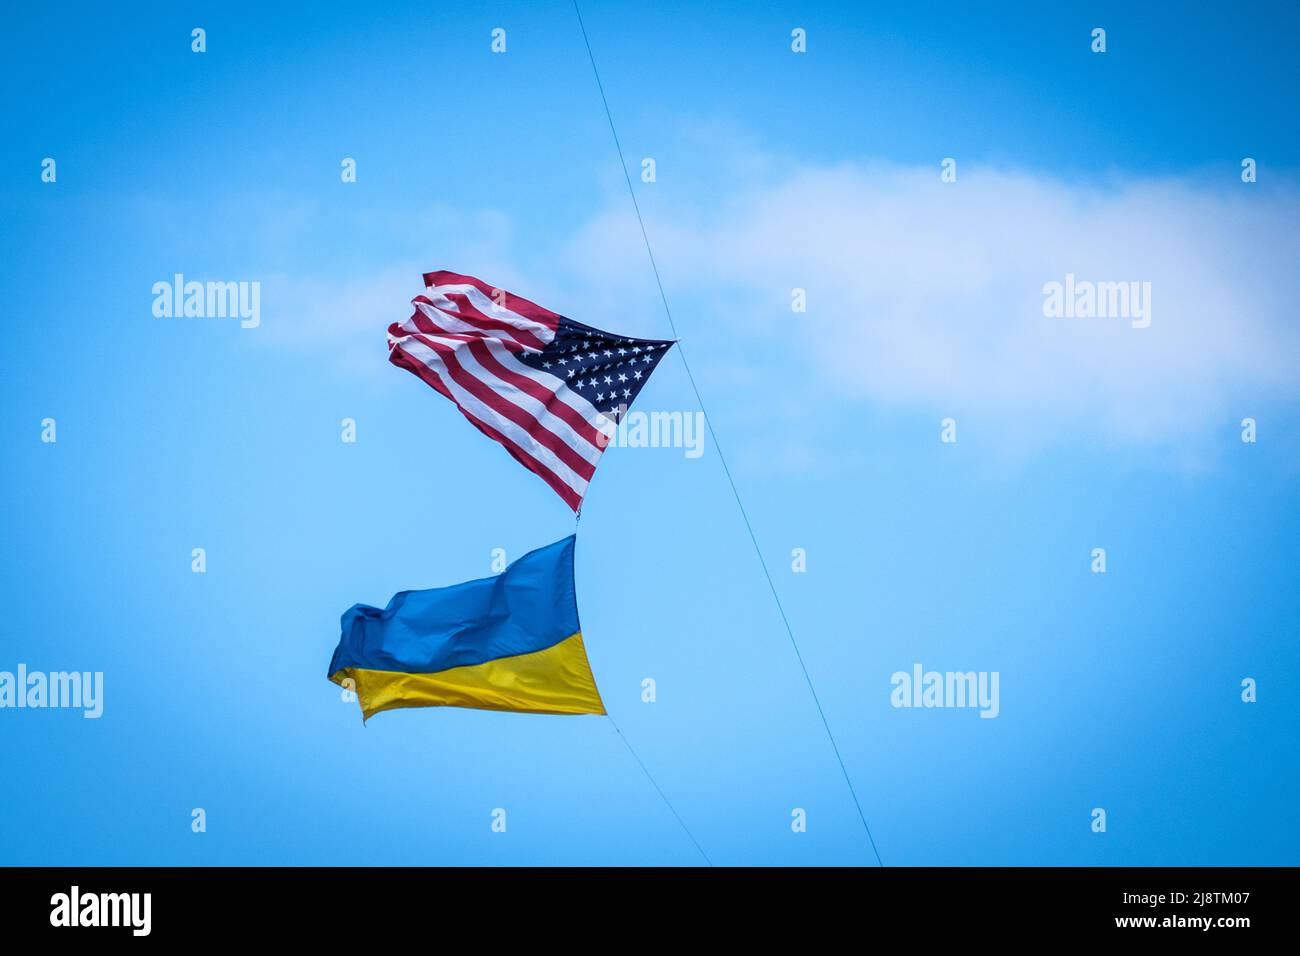 Apoyo en EE.UU. Para Ucrania: Las banderas estadounidenses y ucranianas vuelan desde una correa de cometa, Salisbury, Massachusetts, EE.UU. Foto de stock